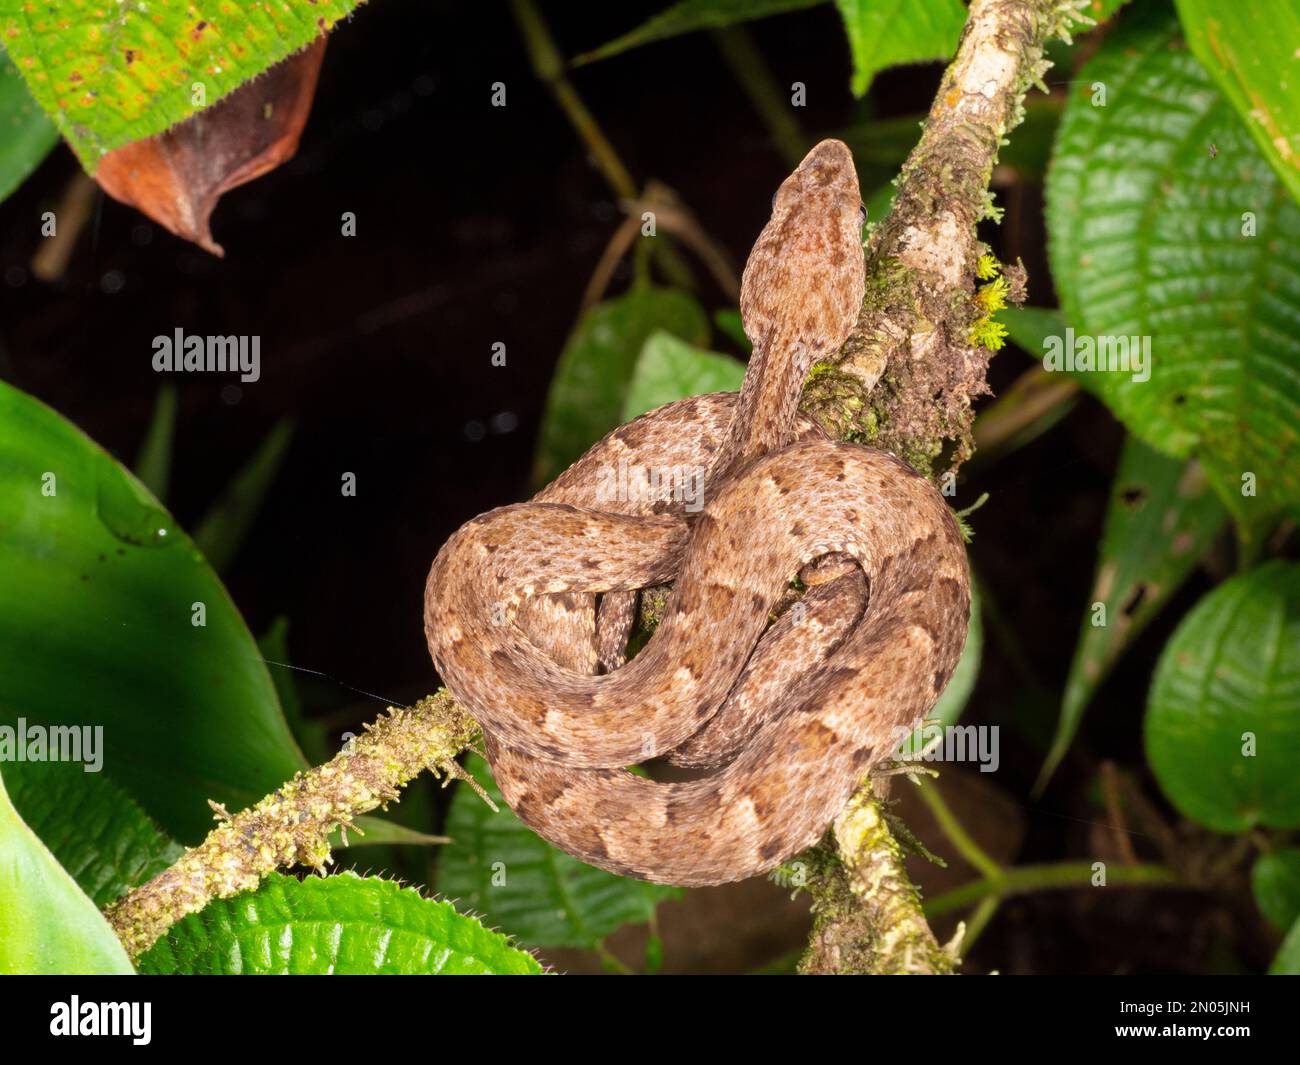 A juvenile venomous Fer de Lance (Bothrops atrox) viper coiled on a branch in the Ecuadorian Amazon. Stock Photo